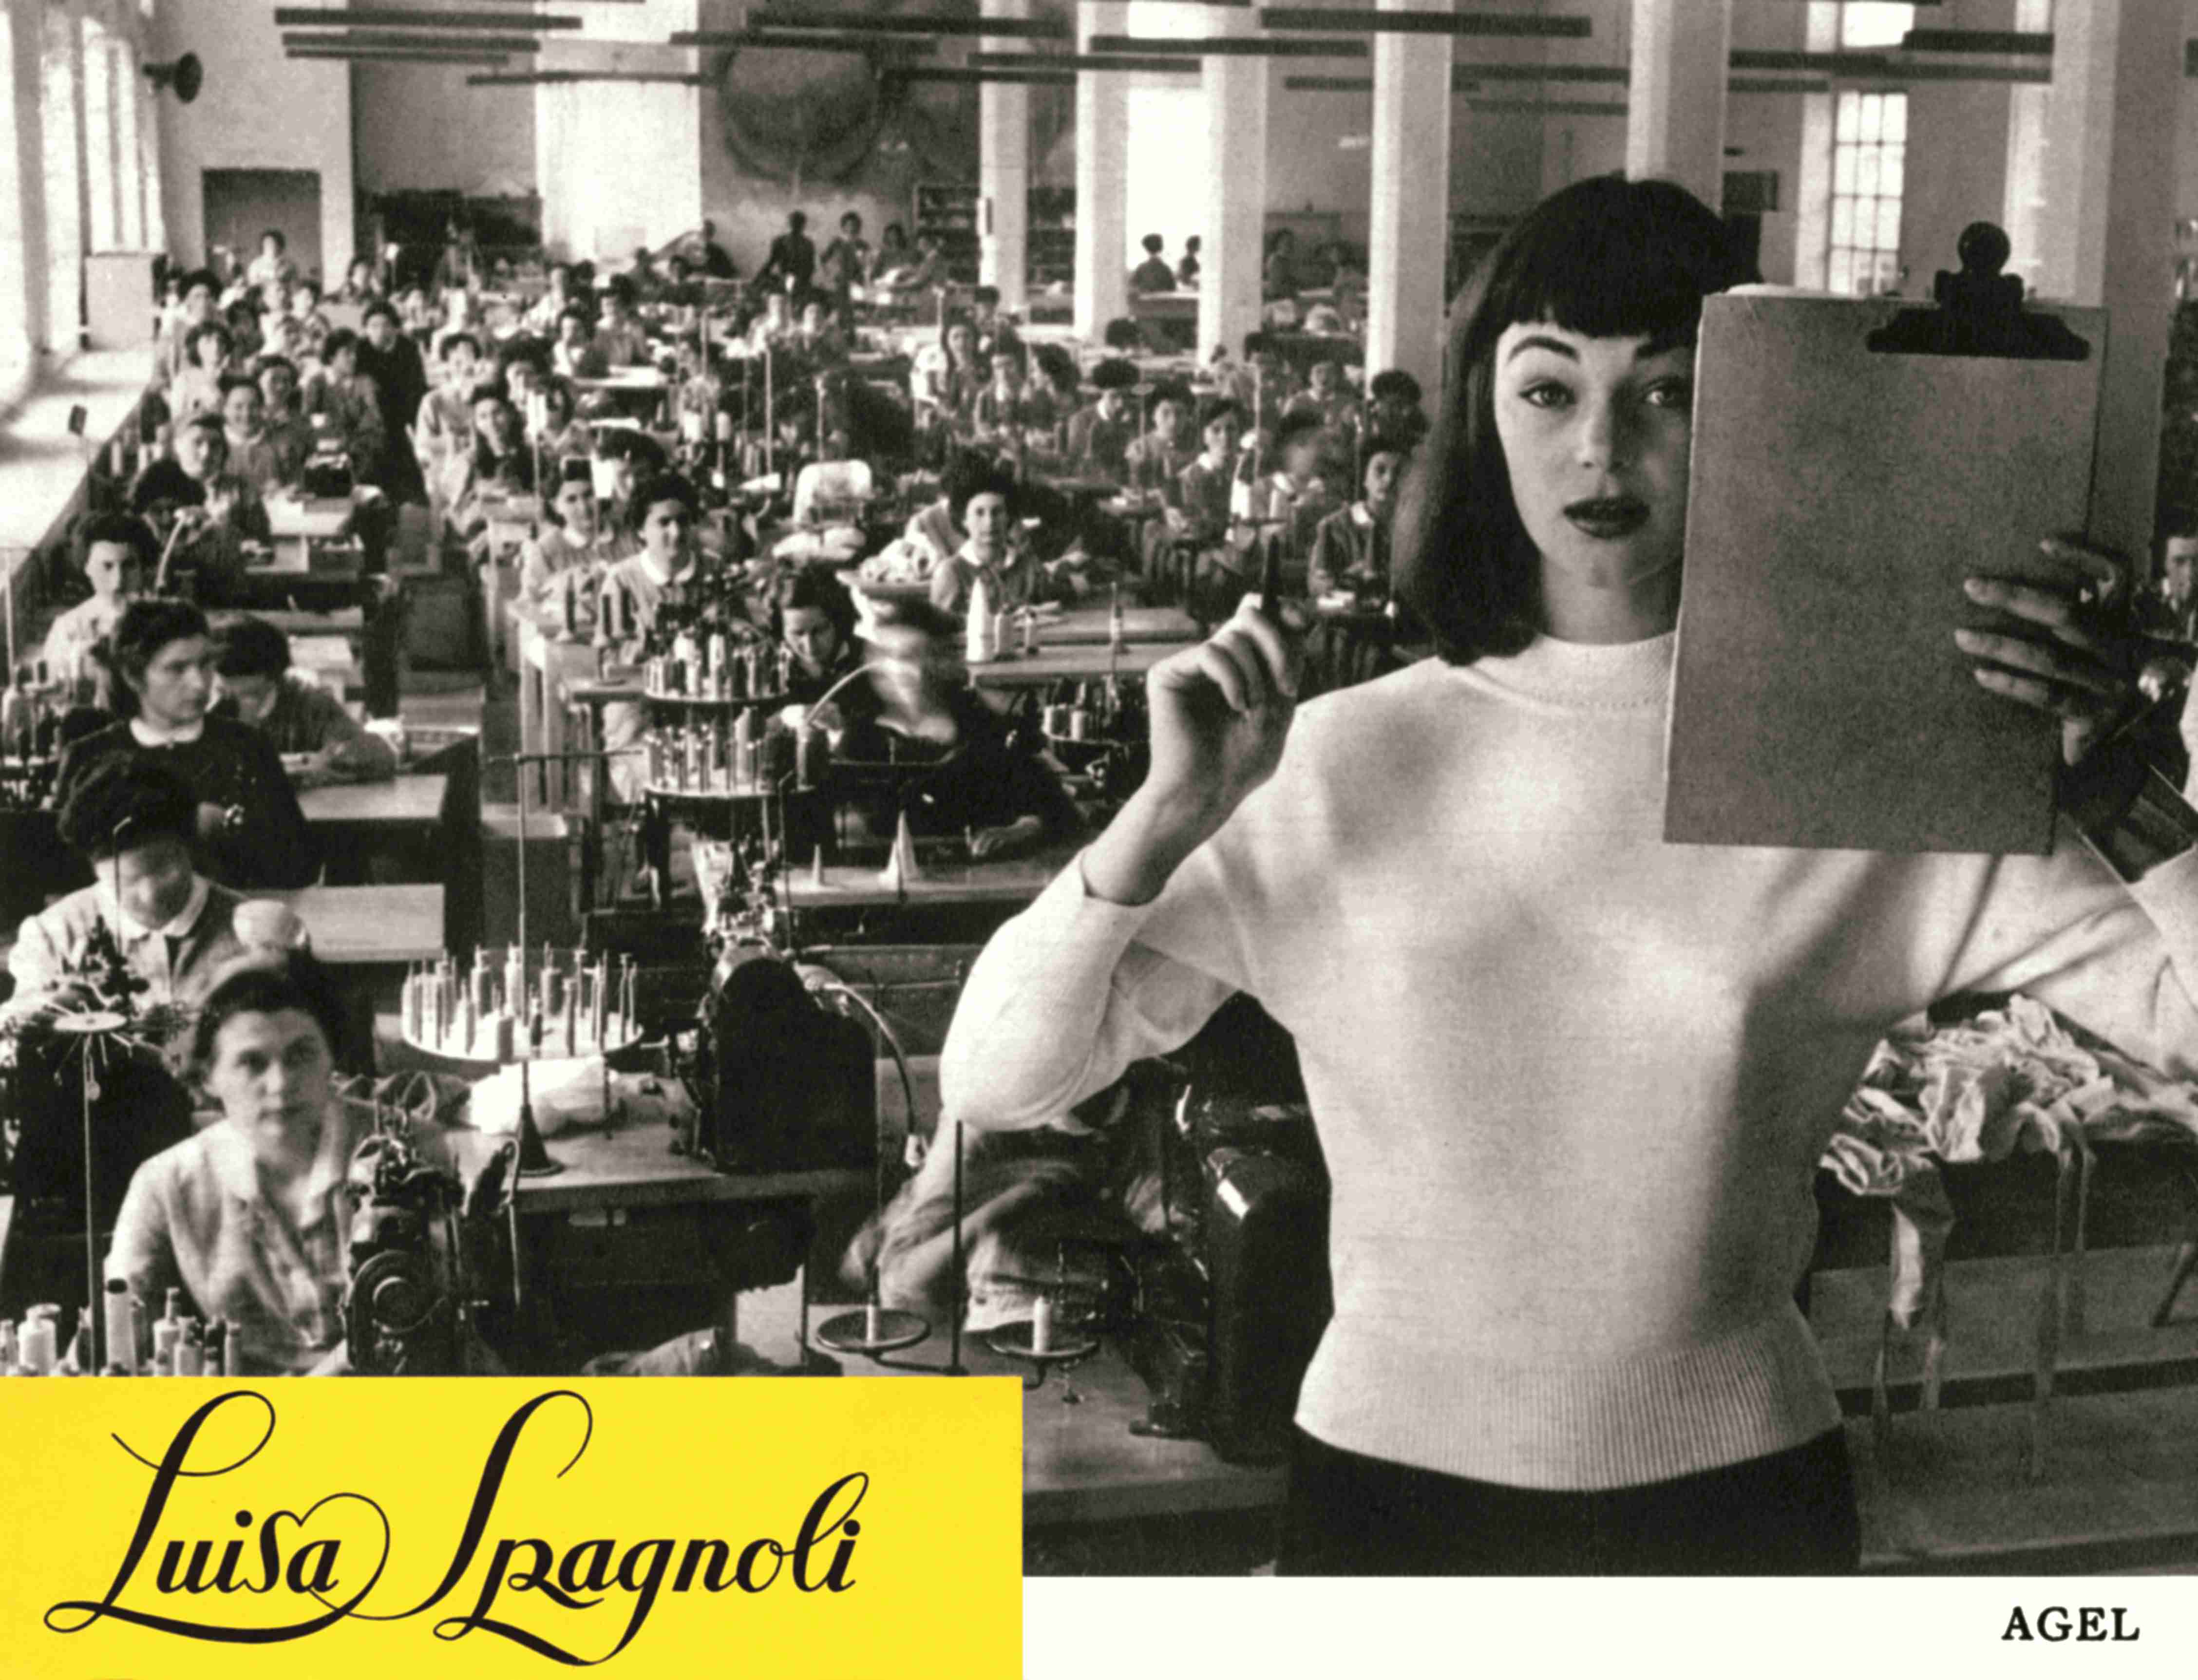 pag. 38 Ivy Nicholson in un servizio fotografico scattato allinterno dello stabilimento Luisa Spagnoli nel 1954 Archivio Spagnoli